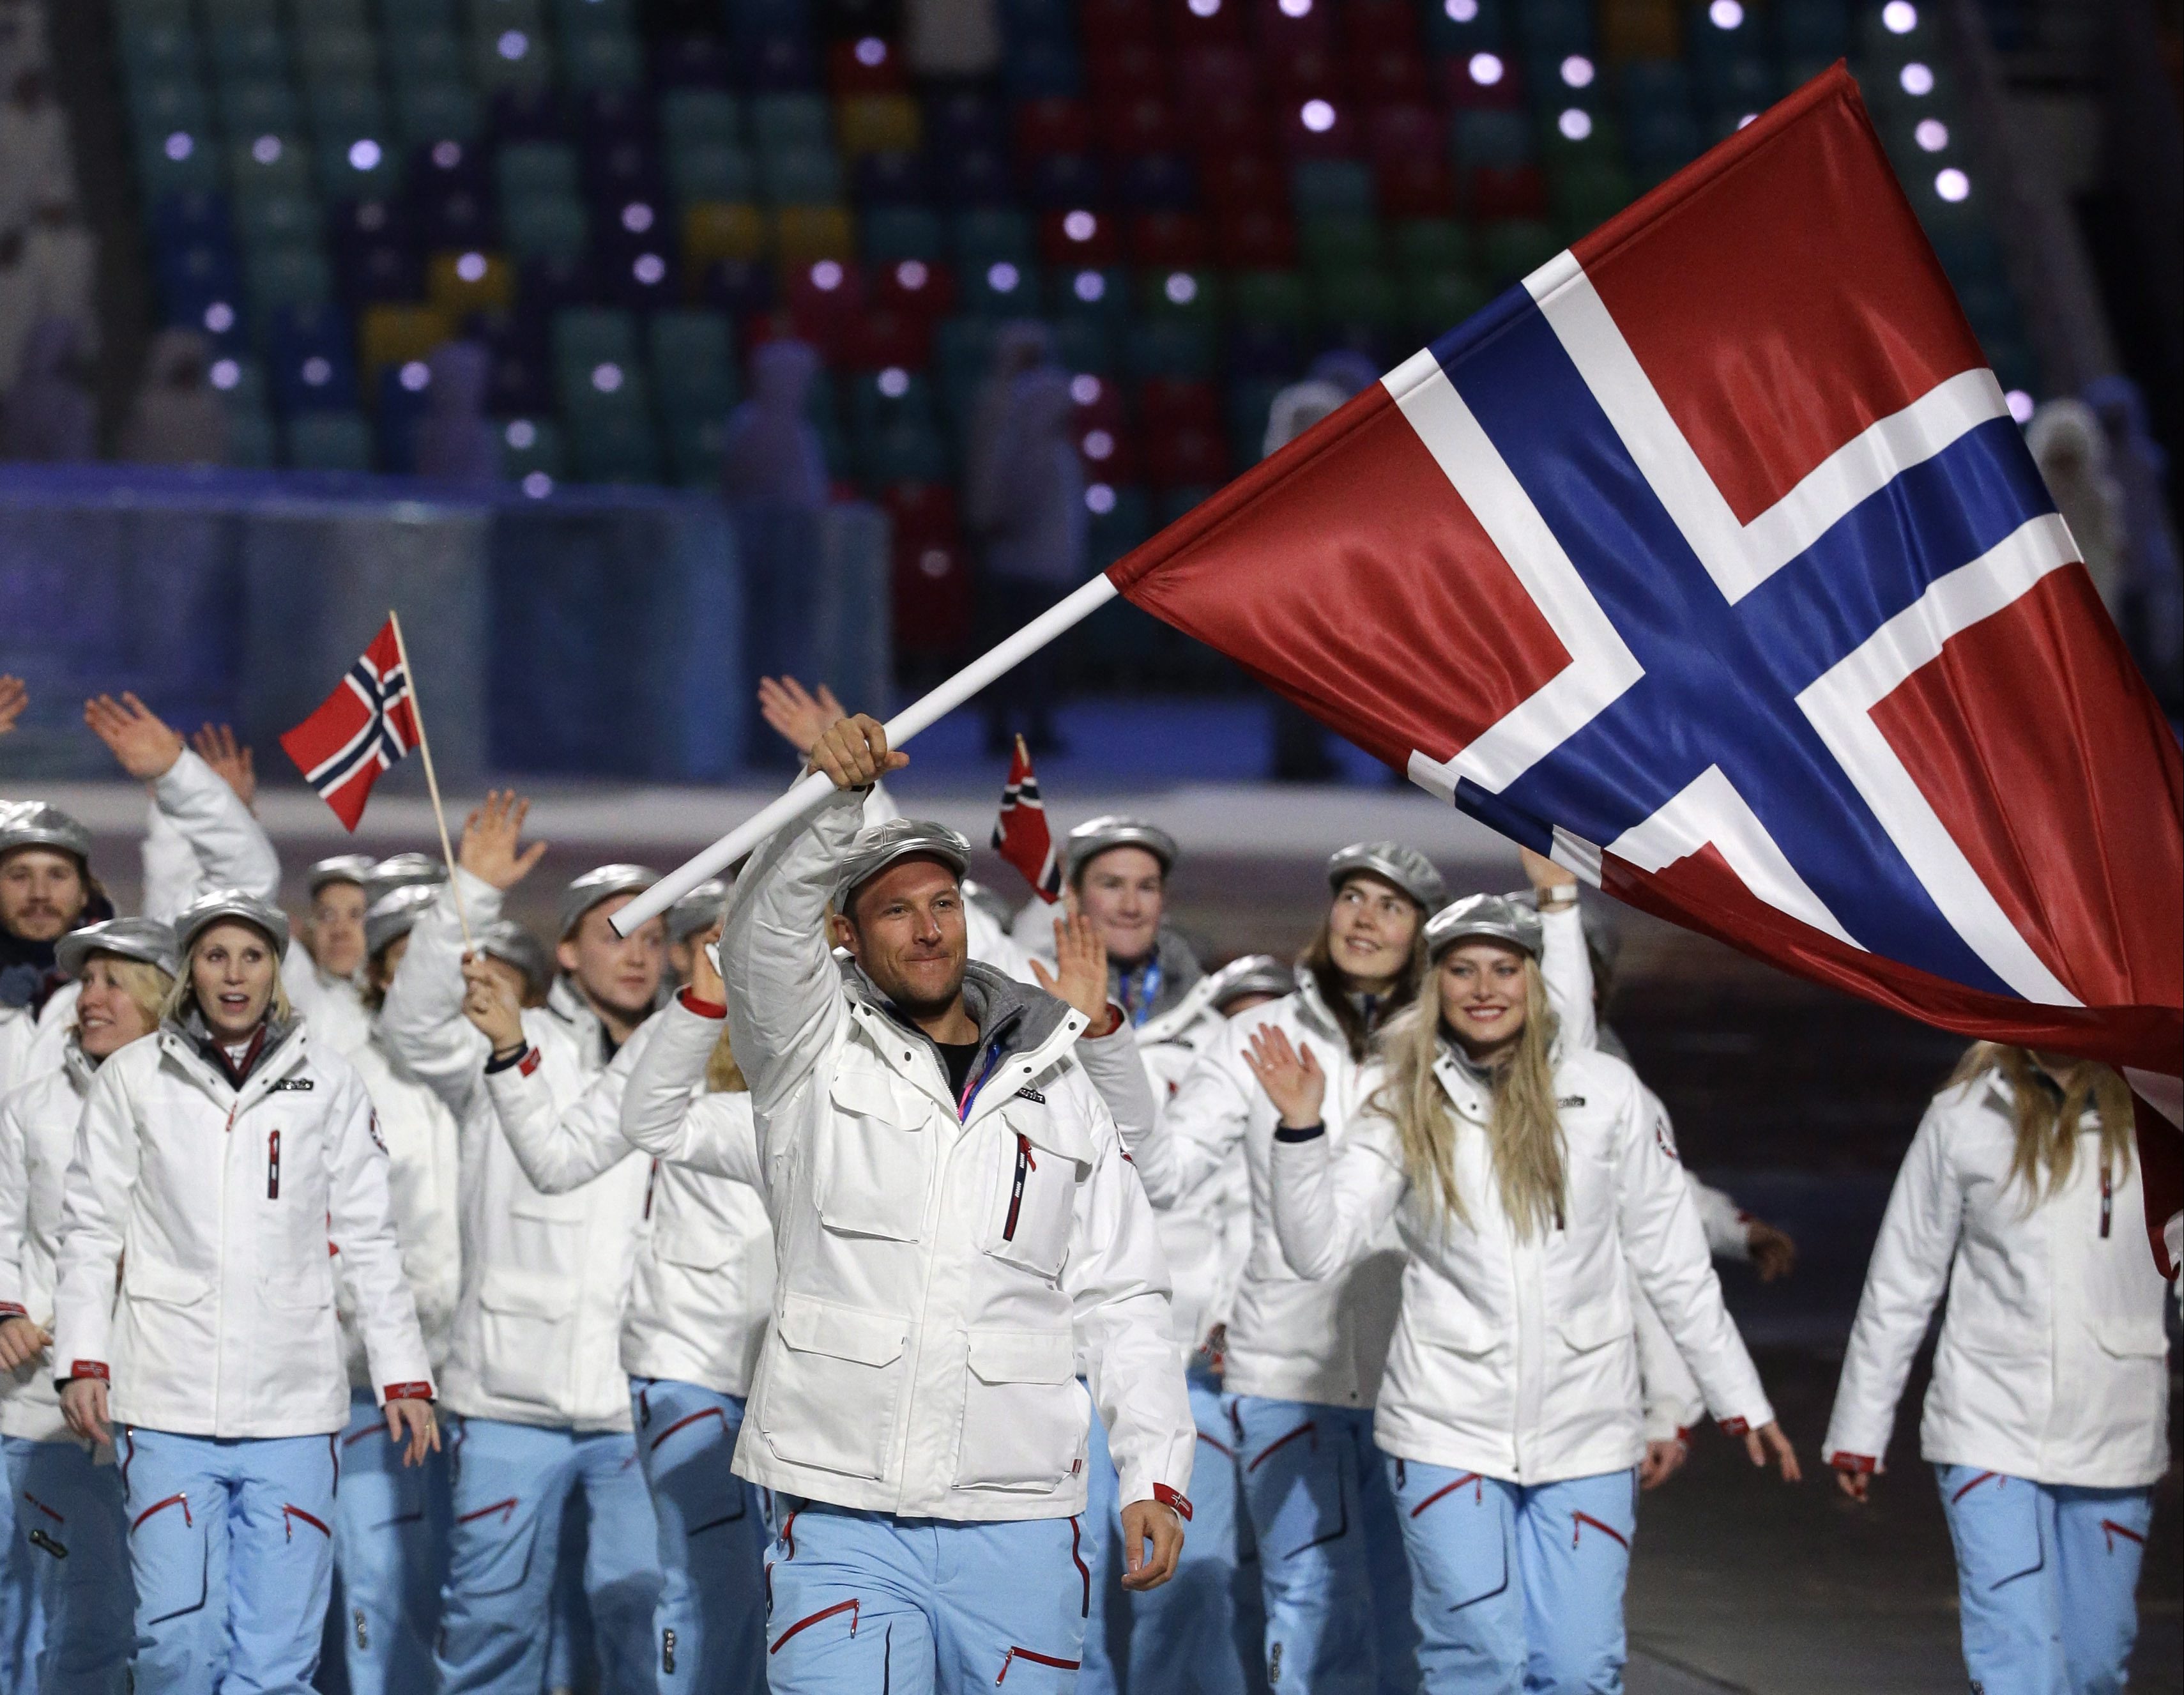 Сочи 2014 сборная Норвегия. Олимпийские костюмы сборной Норвегии. Олимпийские сборные стран